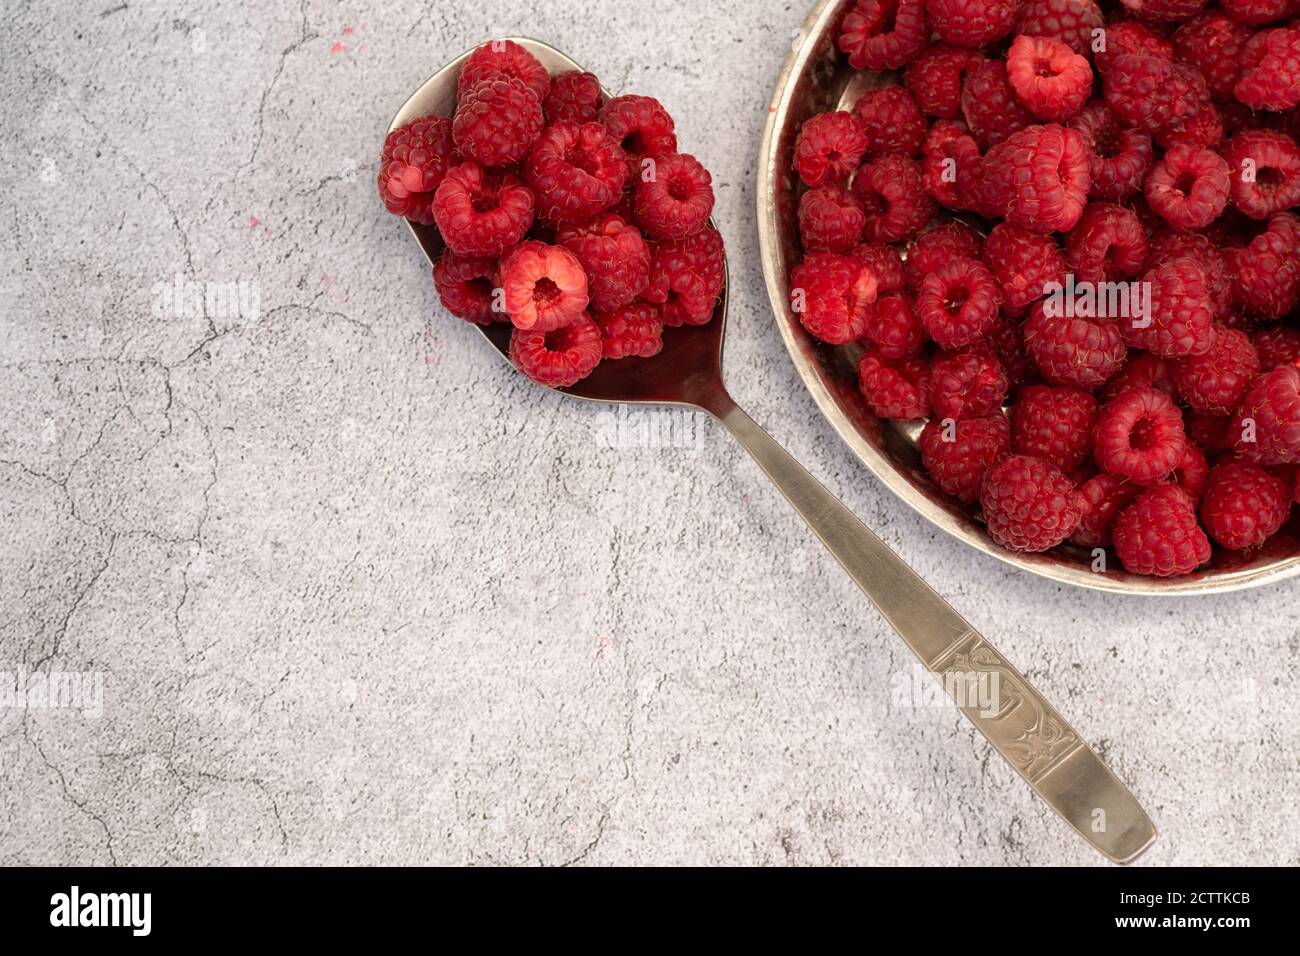 Frisch gepflückte Himbeeren auf grauem Hintergrund, gesunde Ernährung Konzept Stockfoto